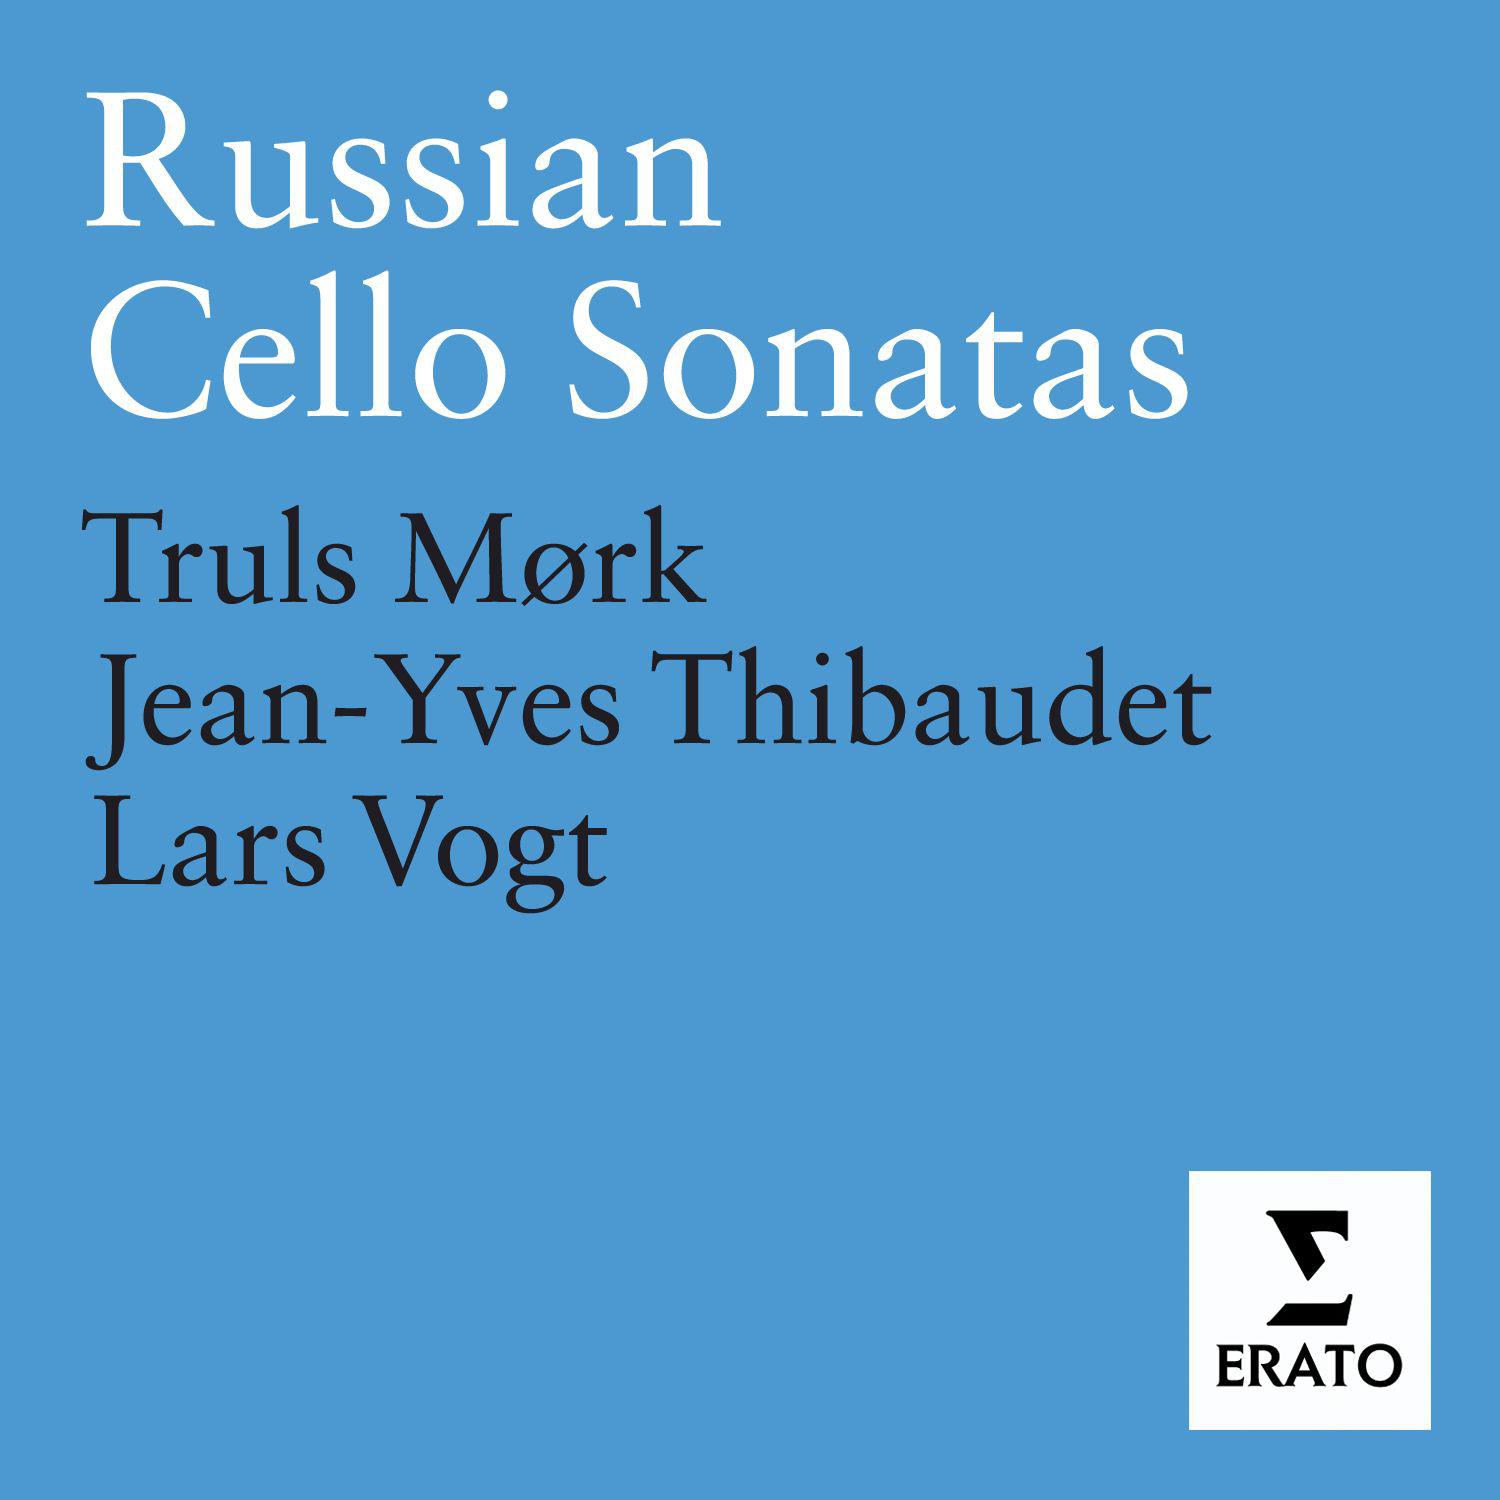 Cello Sonata No. 2 in D minor Op. 40: I. Allegro non troppo - Largo